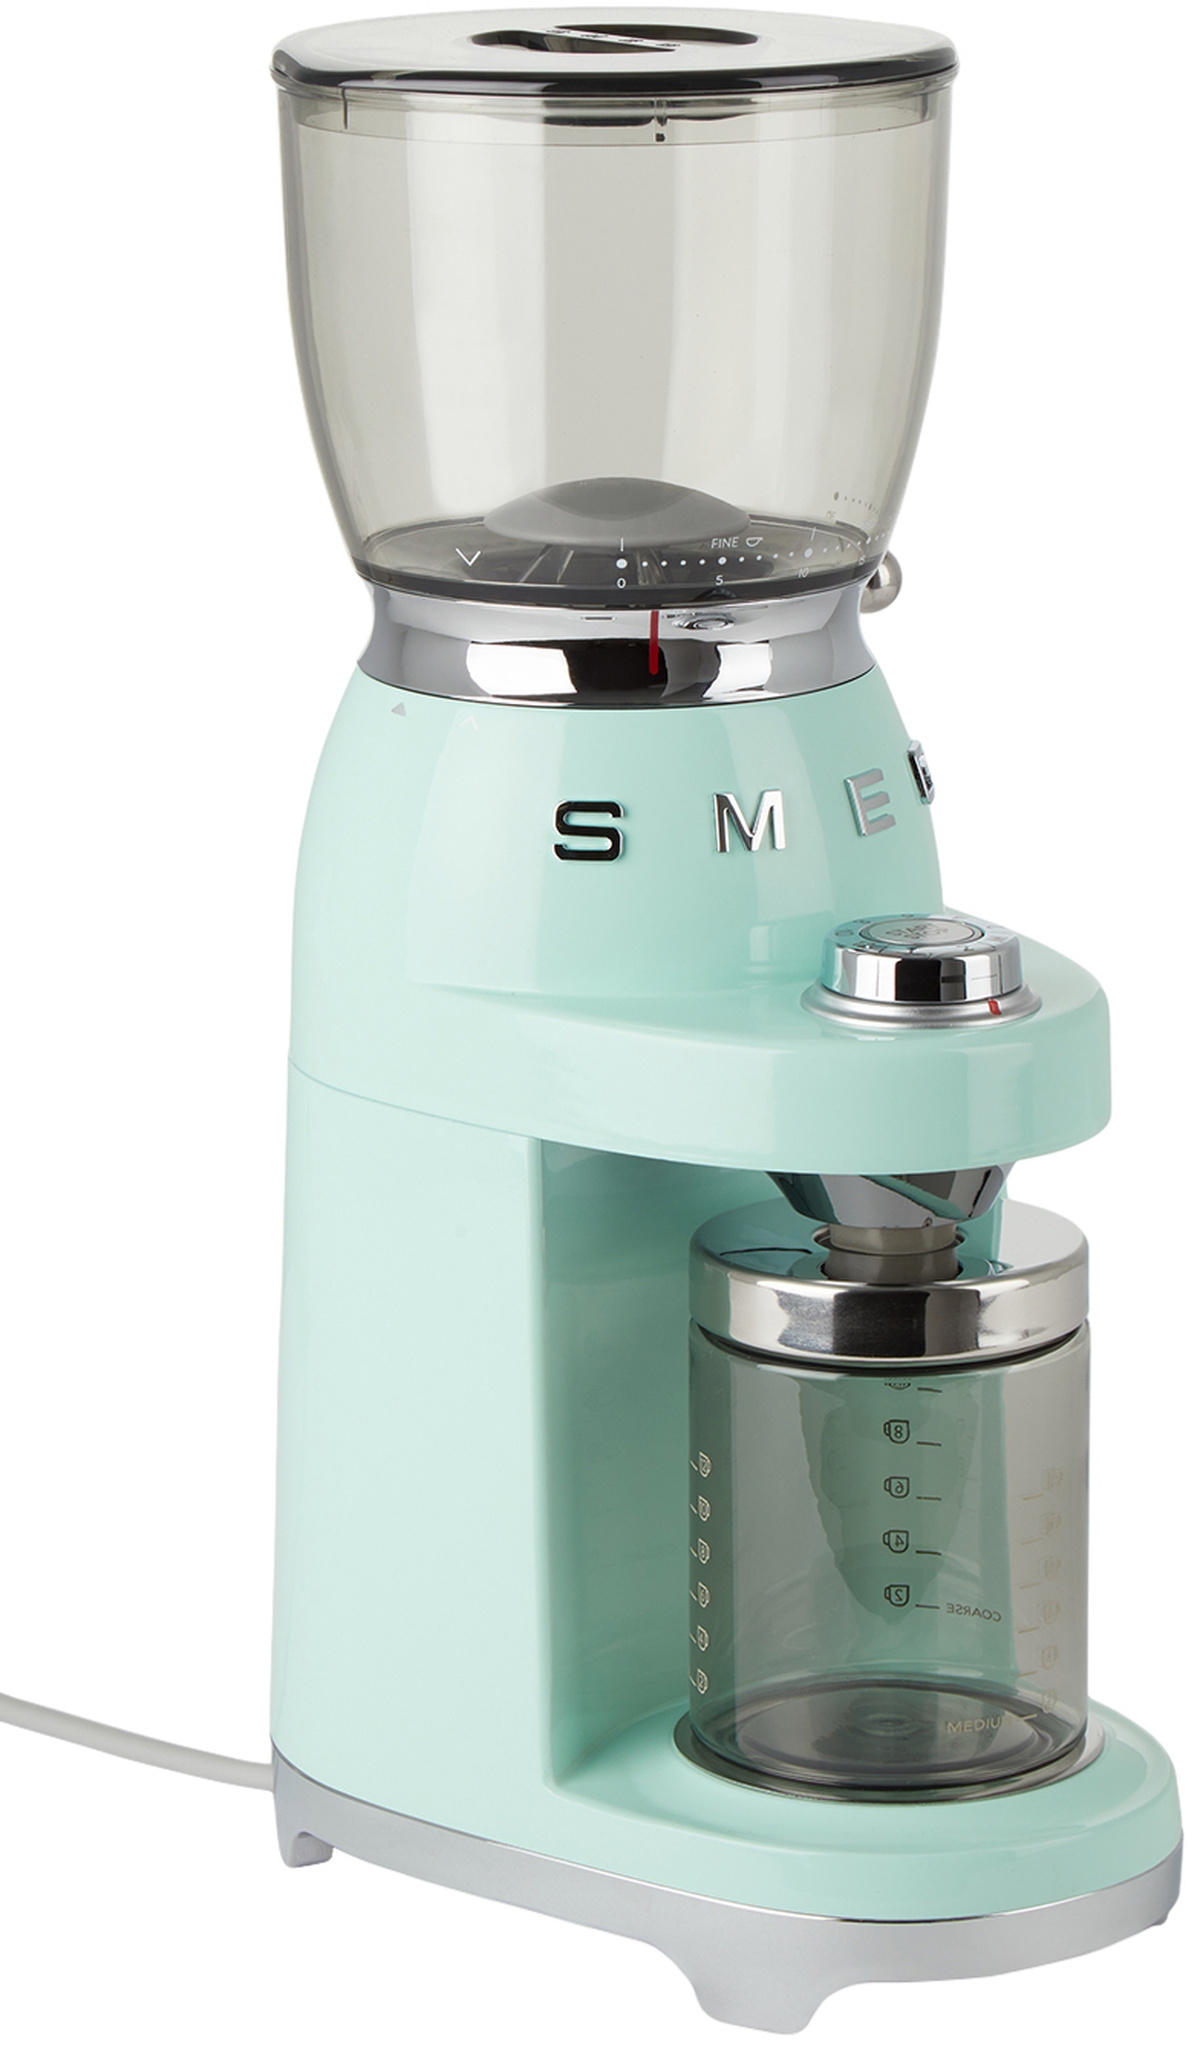 SMEG Green Retro-Style Coffee Grinder SMEG